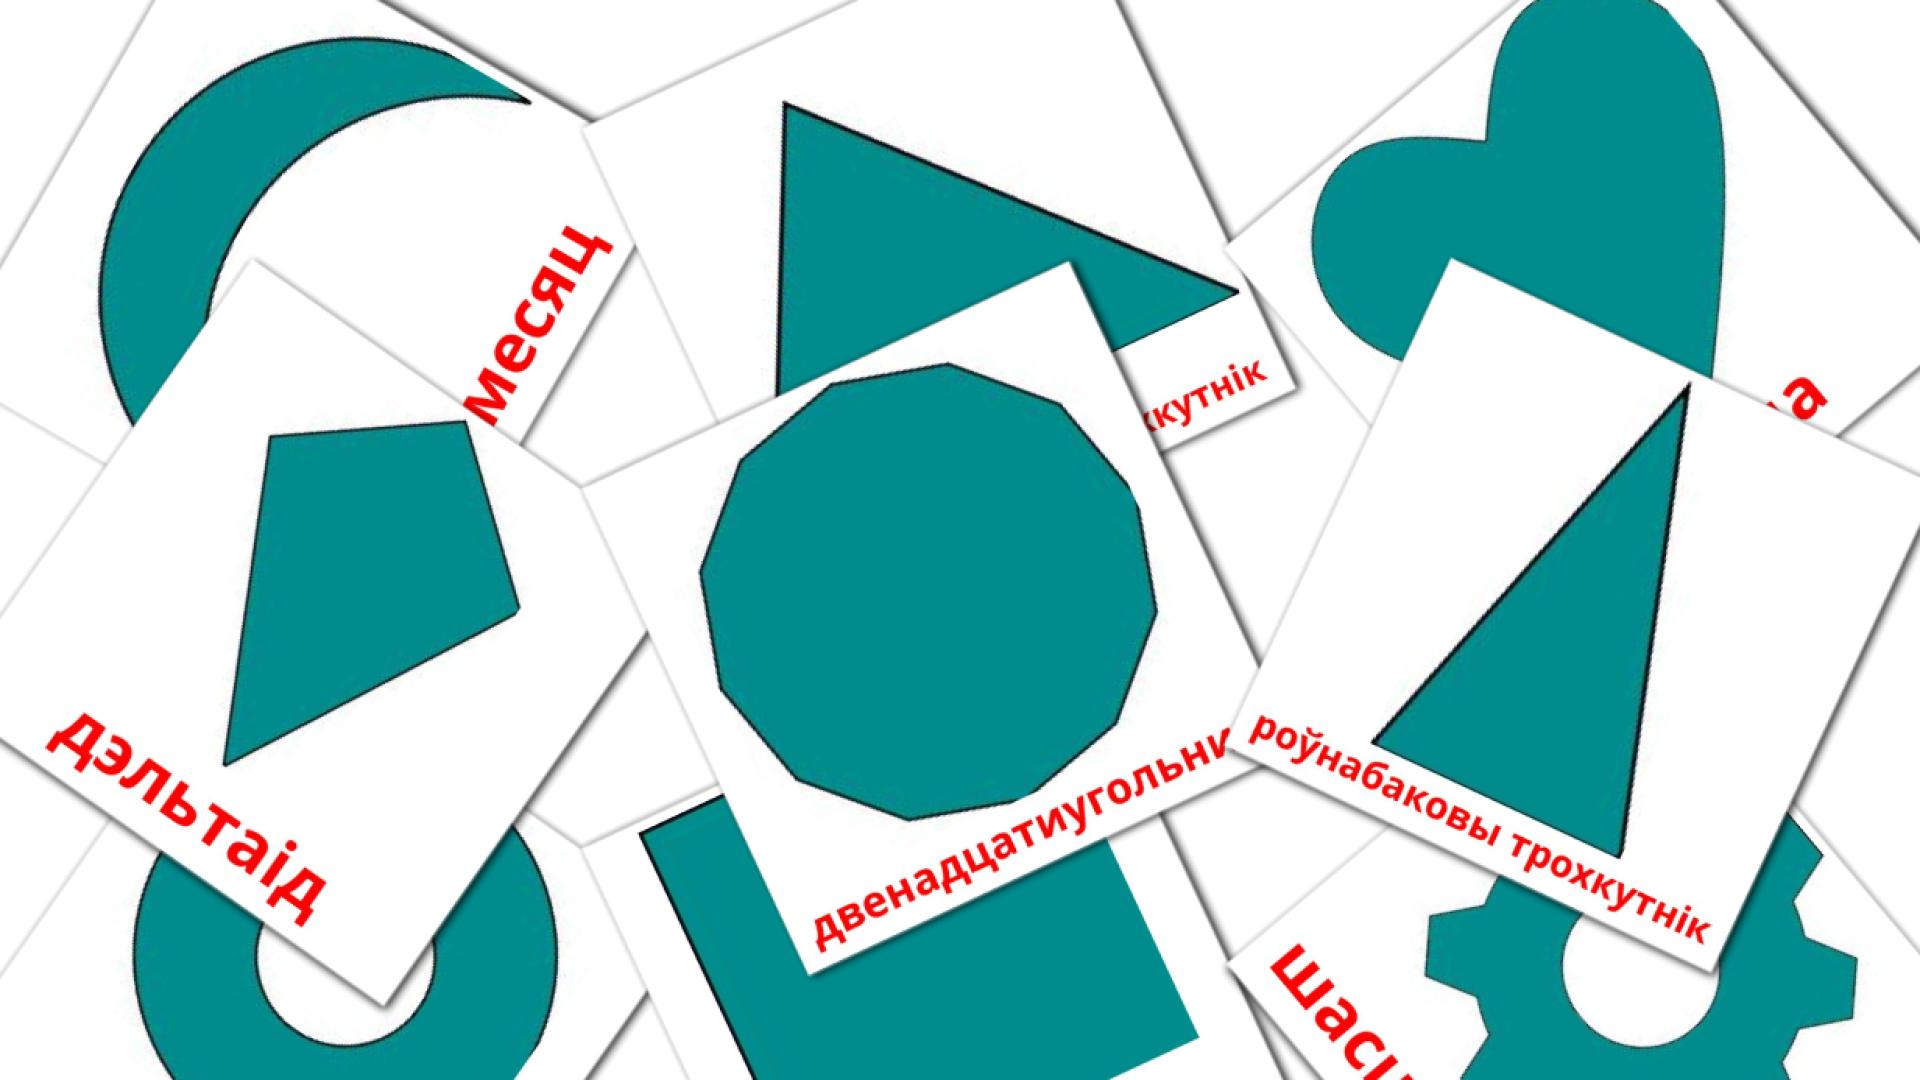 Figuras  2D - tarjetas de vocabulario en bielorruso